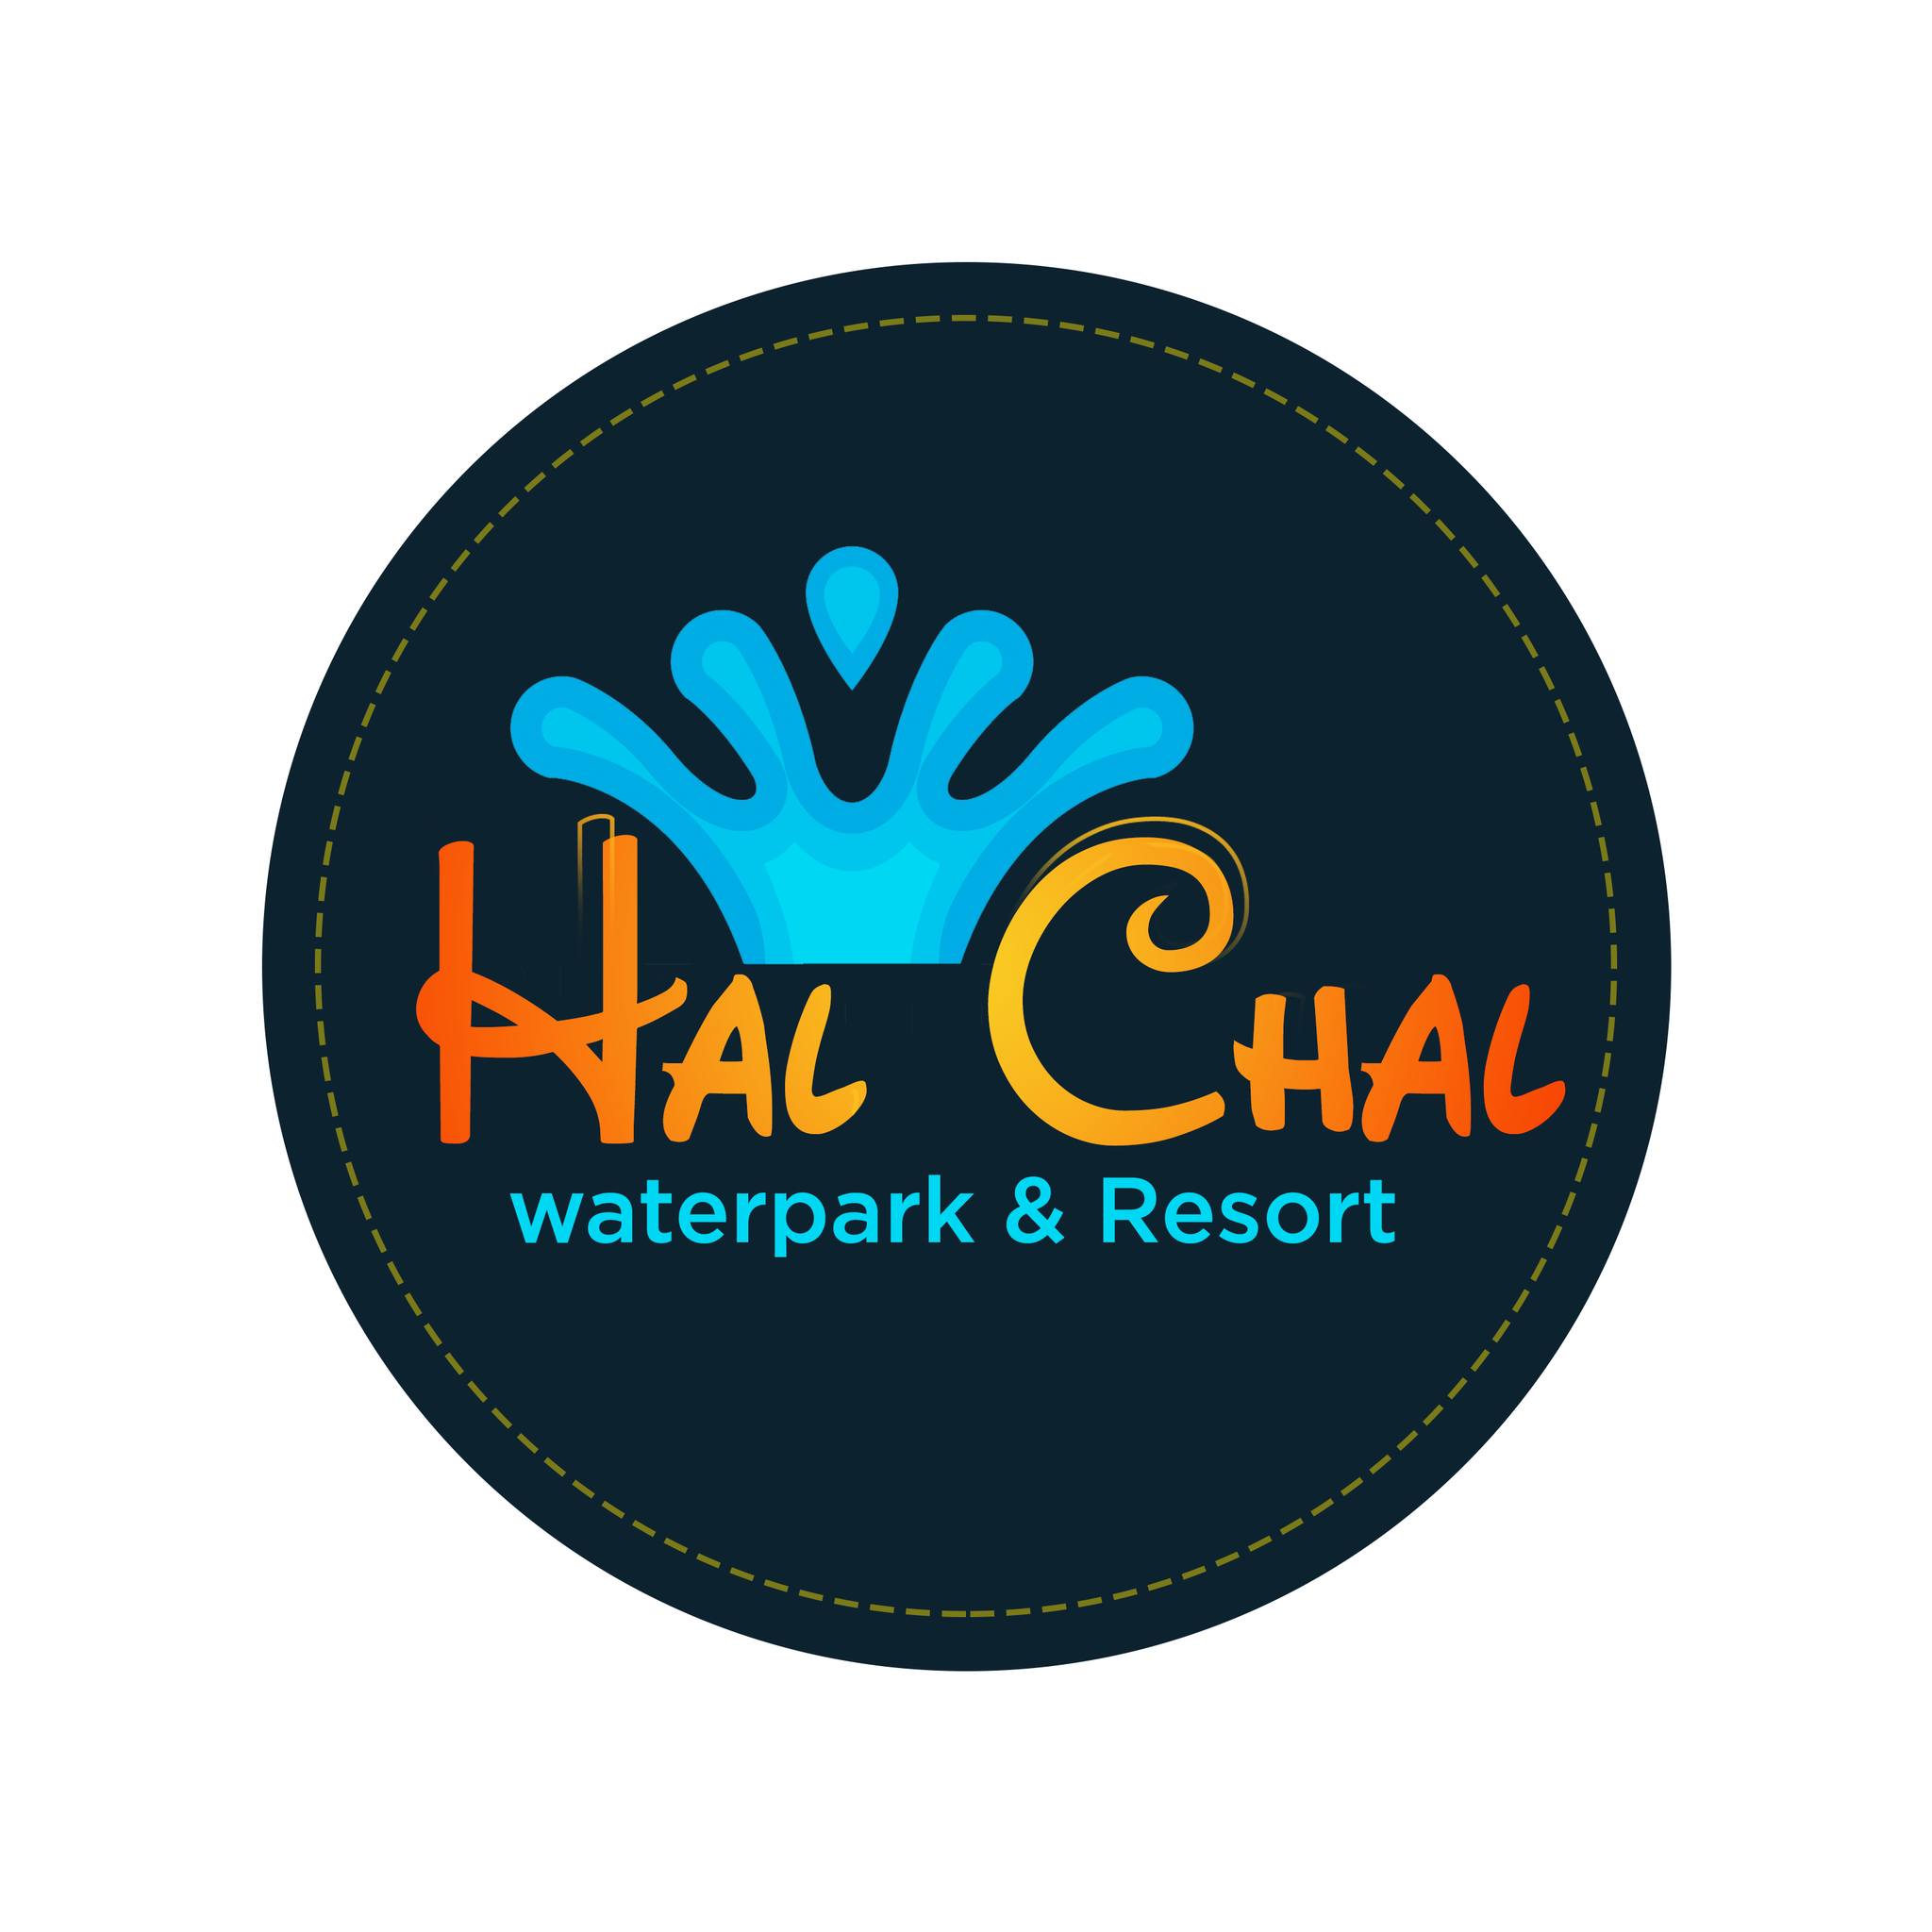 Halchal Waterpark|Theme Park|Entertainment